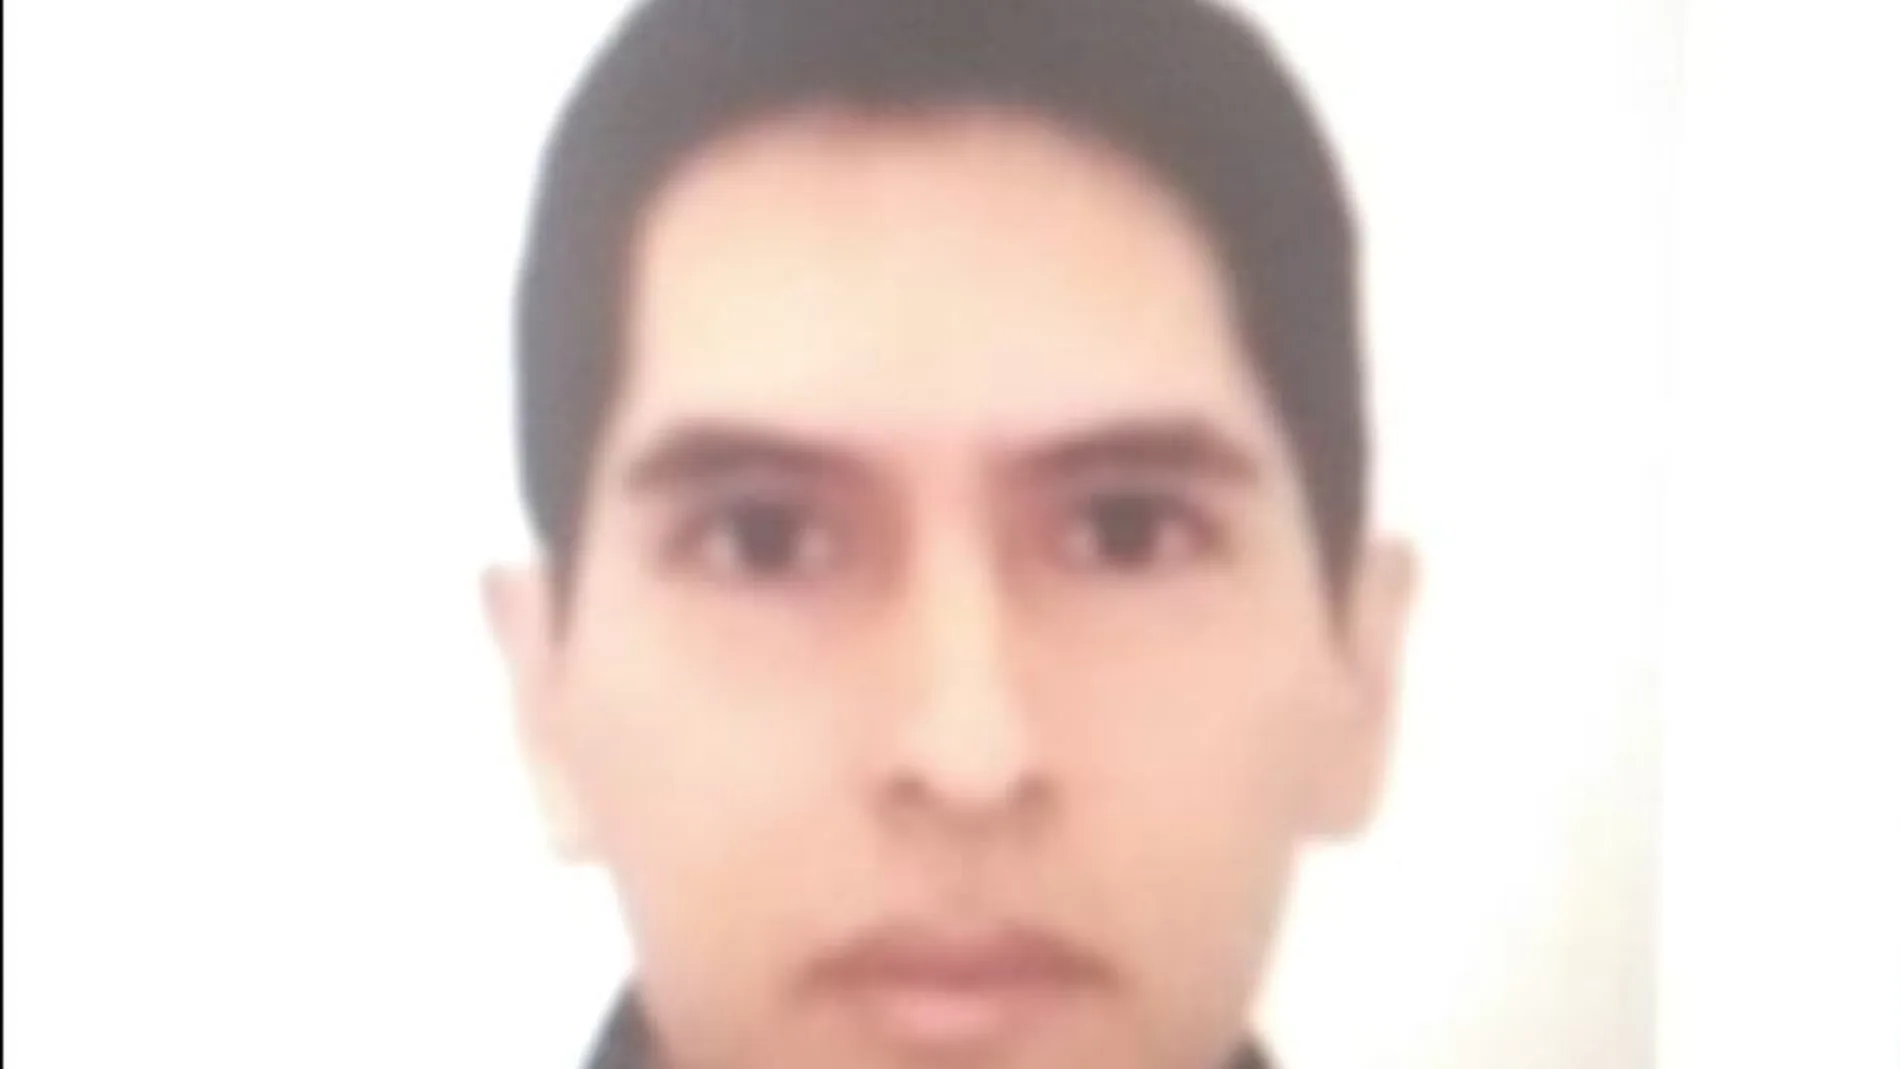 Diego Julca, peruano de 24 años, ha llamado él mismo a la Policía tras cometer el crimen